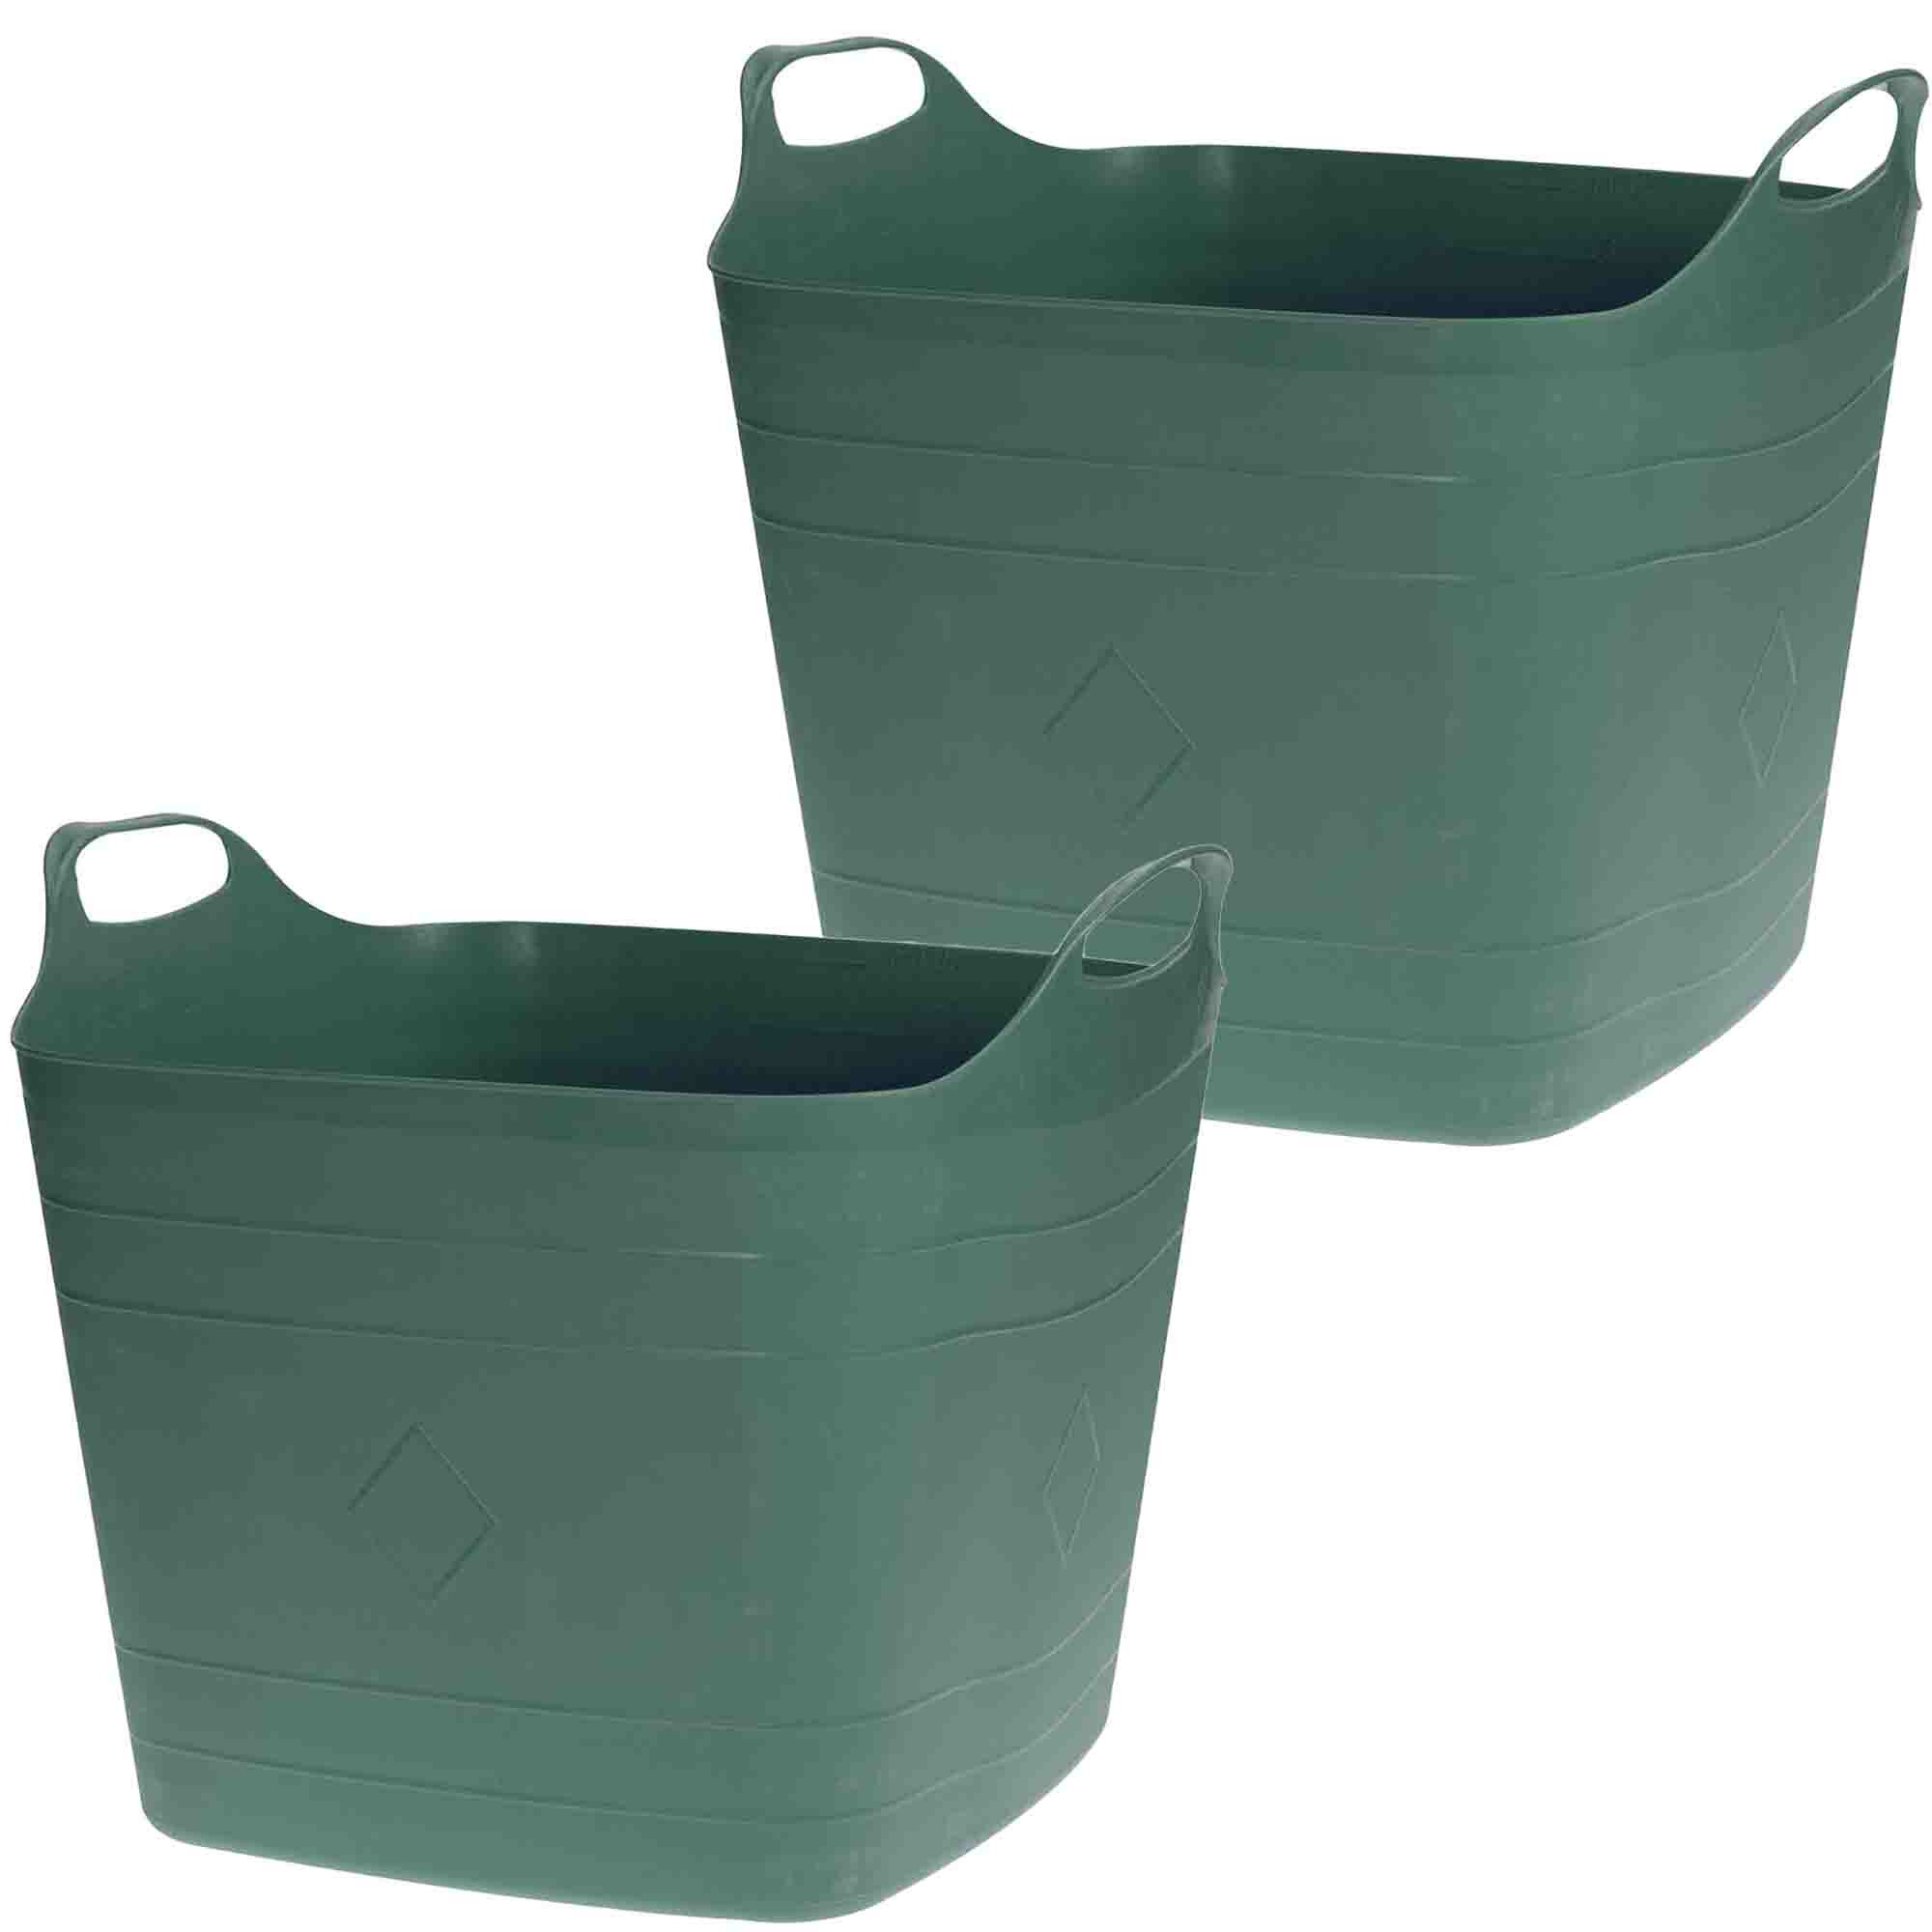 2x Stuks Flexibele kuip emmers-wasmanden groen 40 liter vierkant kunststof